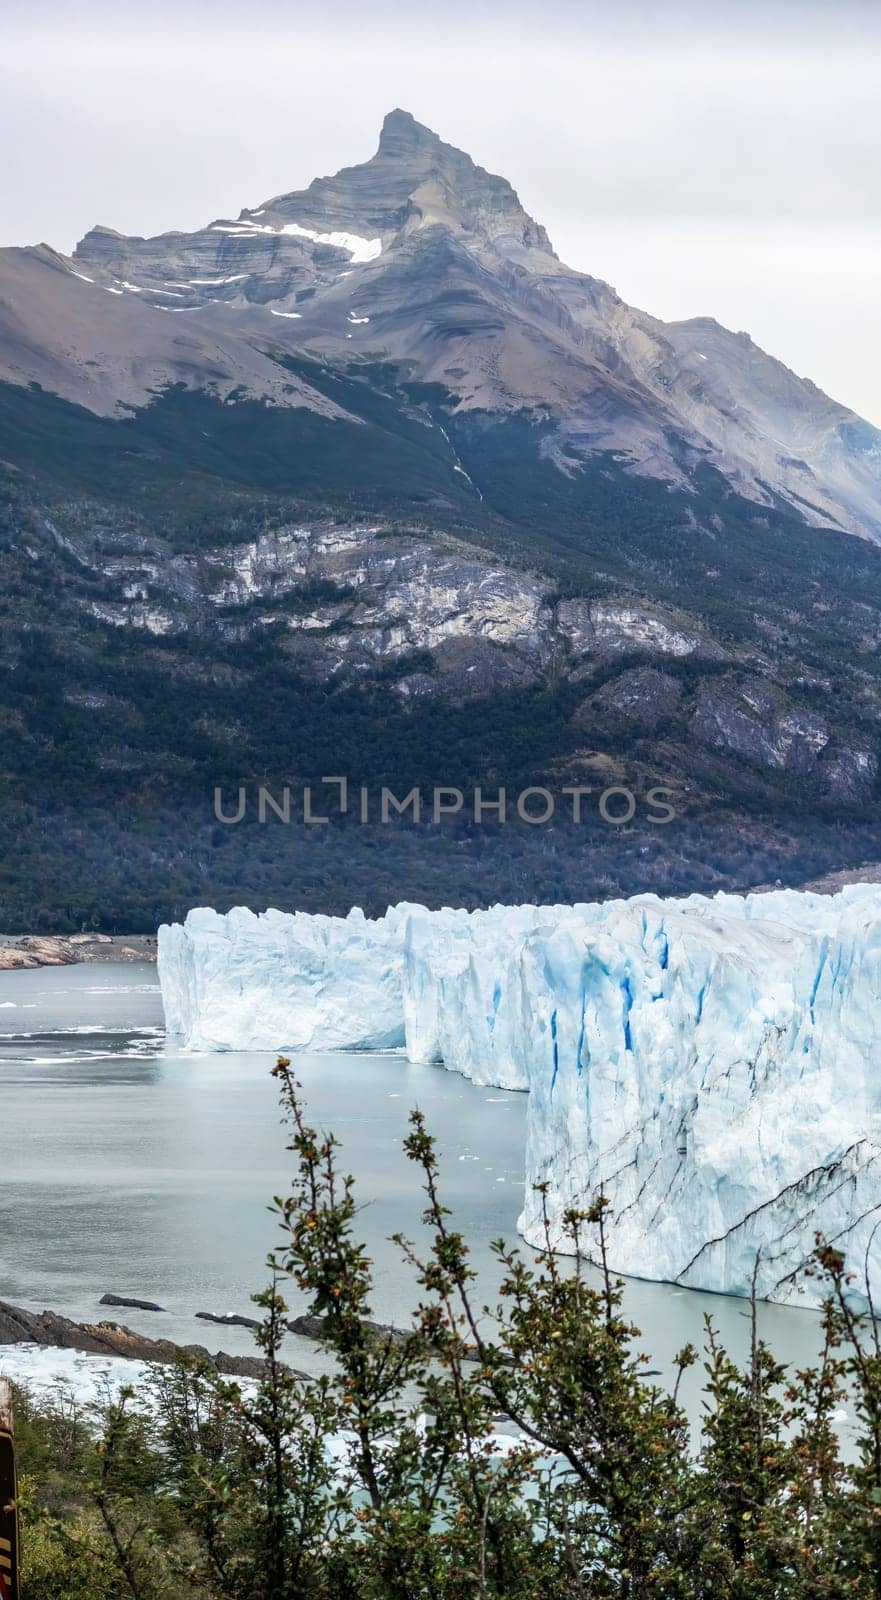 Majestic Iceberg Formation in Pristine Mountainous Landscape by FerradalFCG